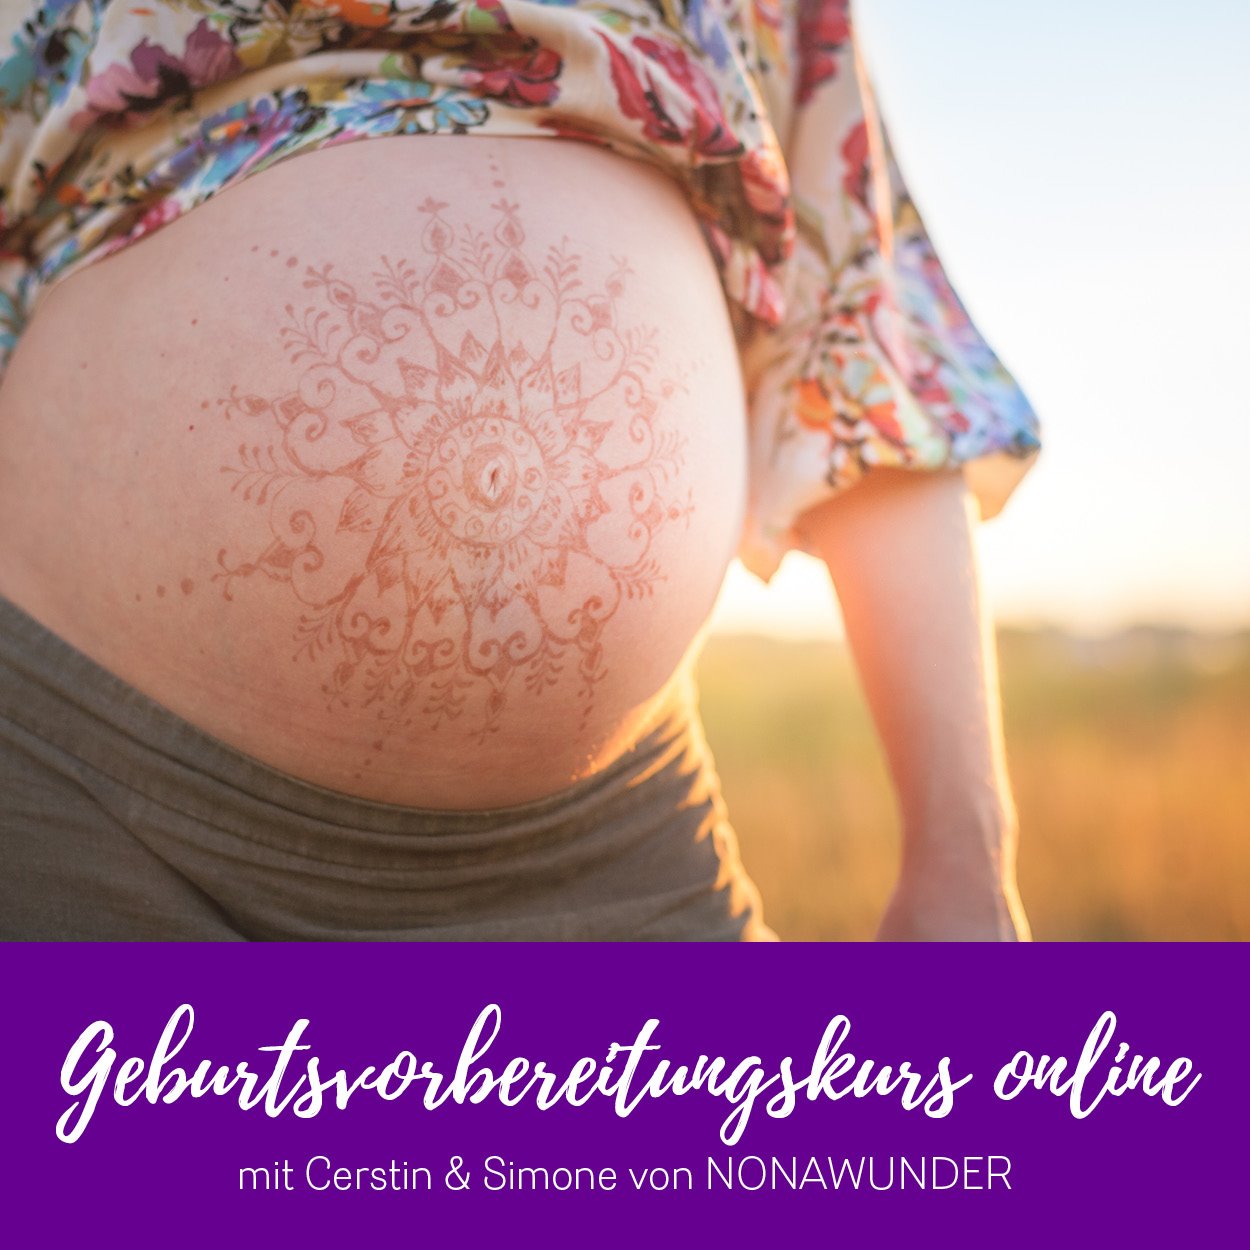 Bild: Schwangerer Bauch, Text: Geburtsvorbereitungskurs online mit Cerstin und Simone von Nonawunder